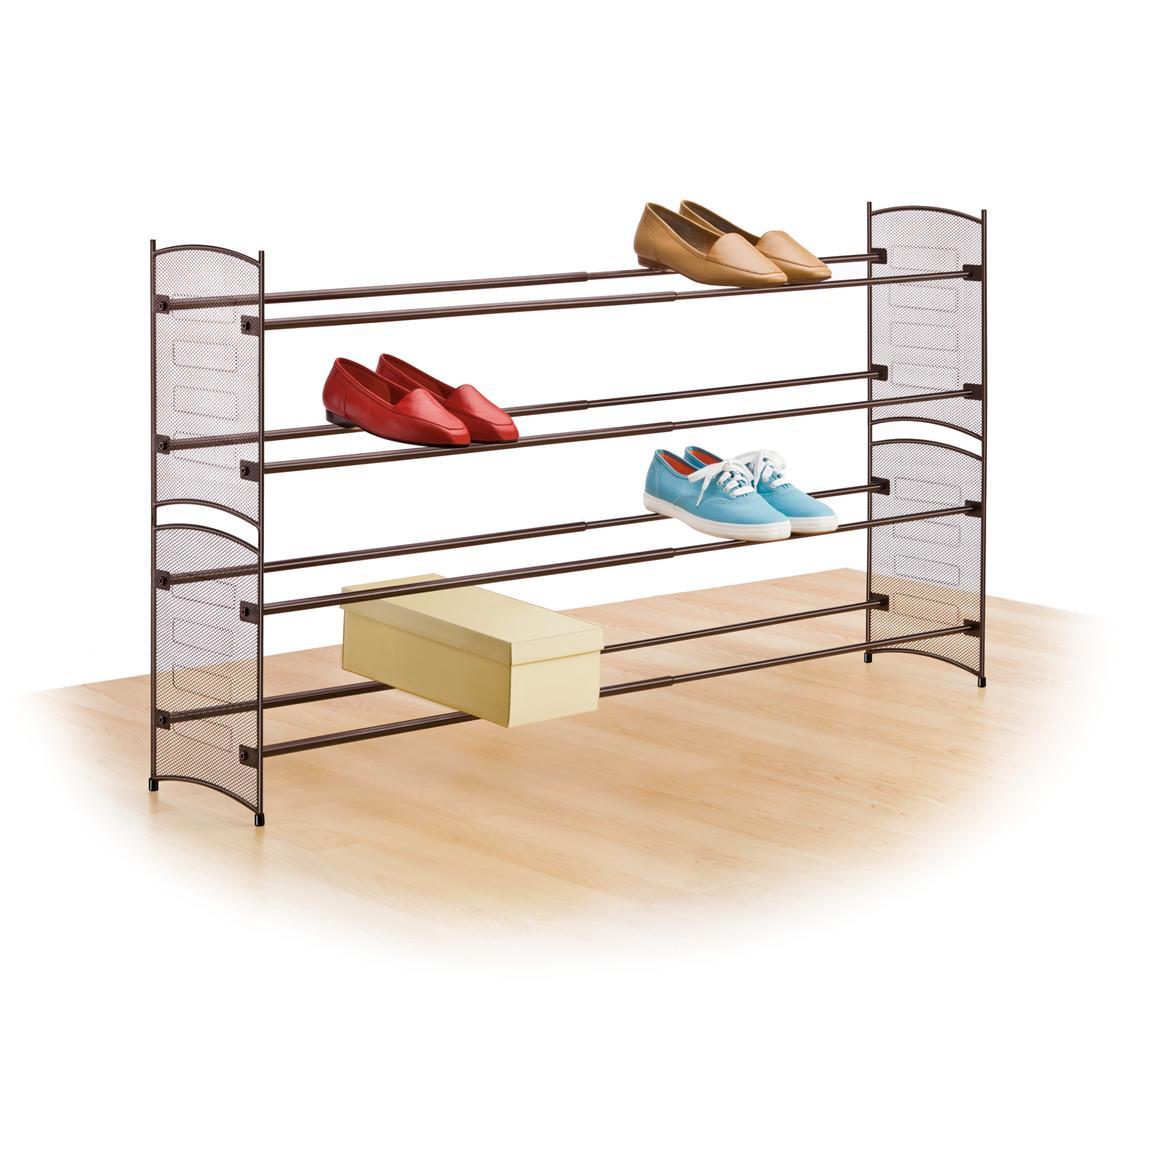 Bookshelf clipart shoe rack, Bookshelf shoe rack Transparent FREE for ...